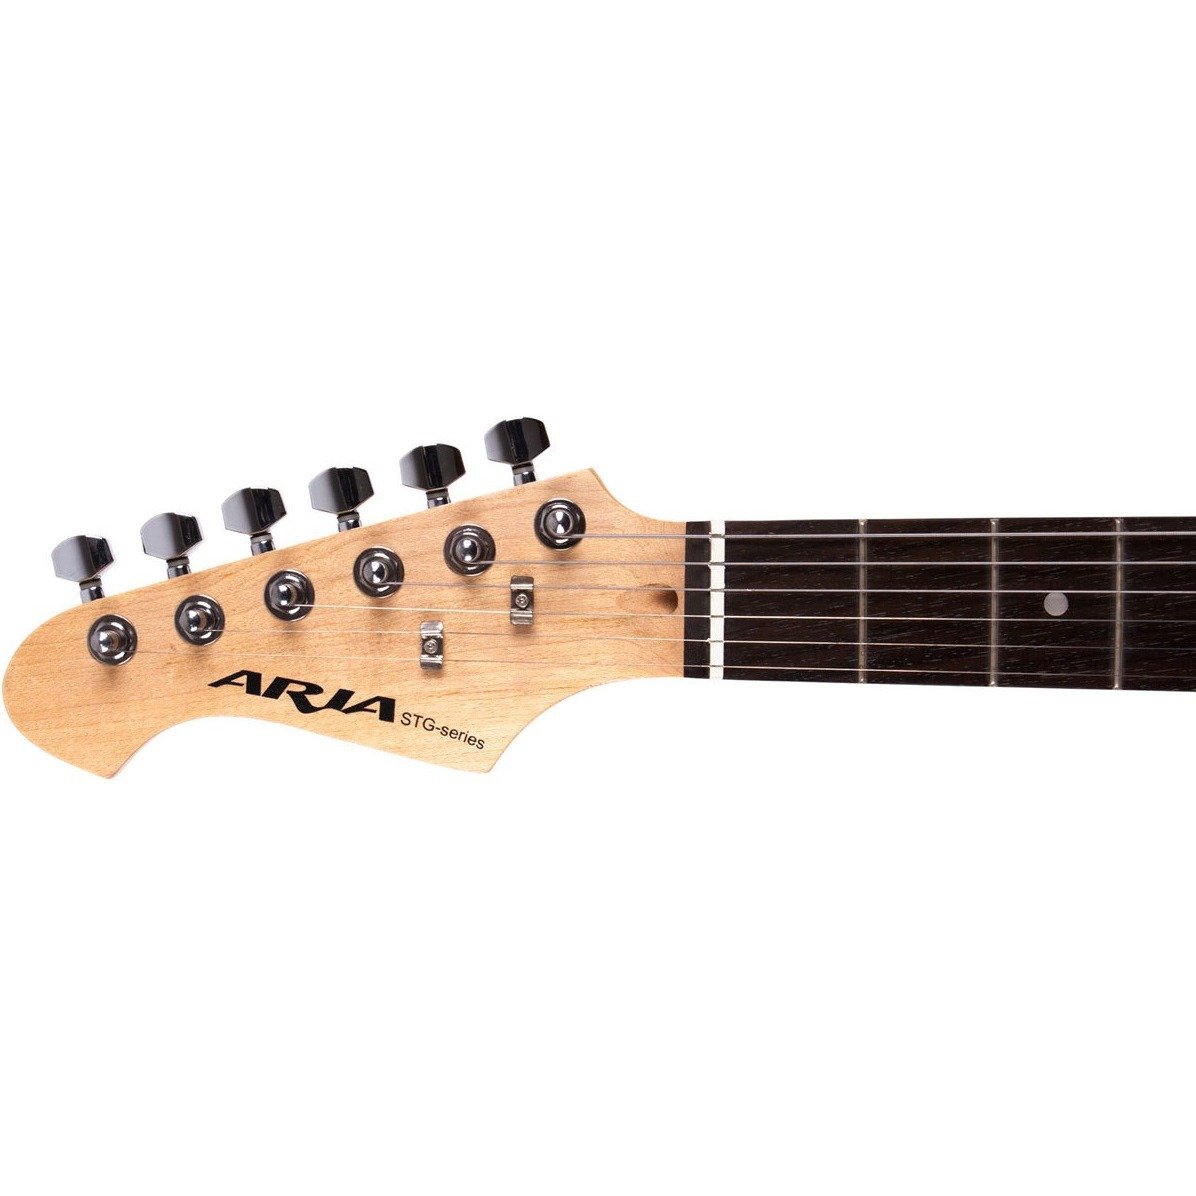 Гитара STG-004 3ts Aria